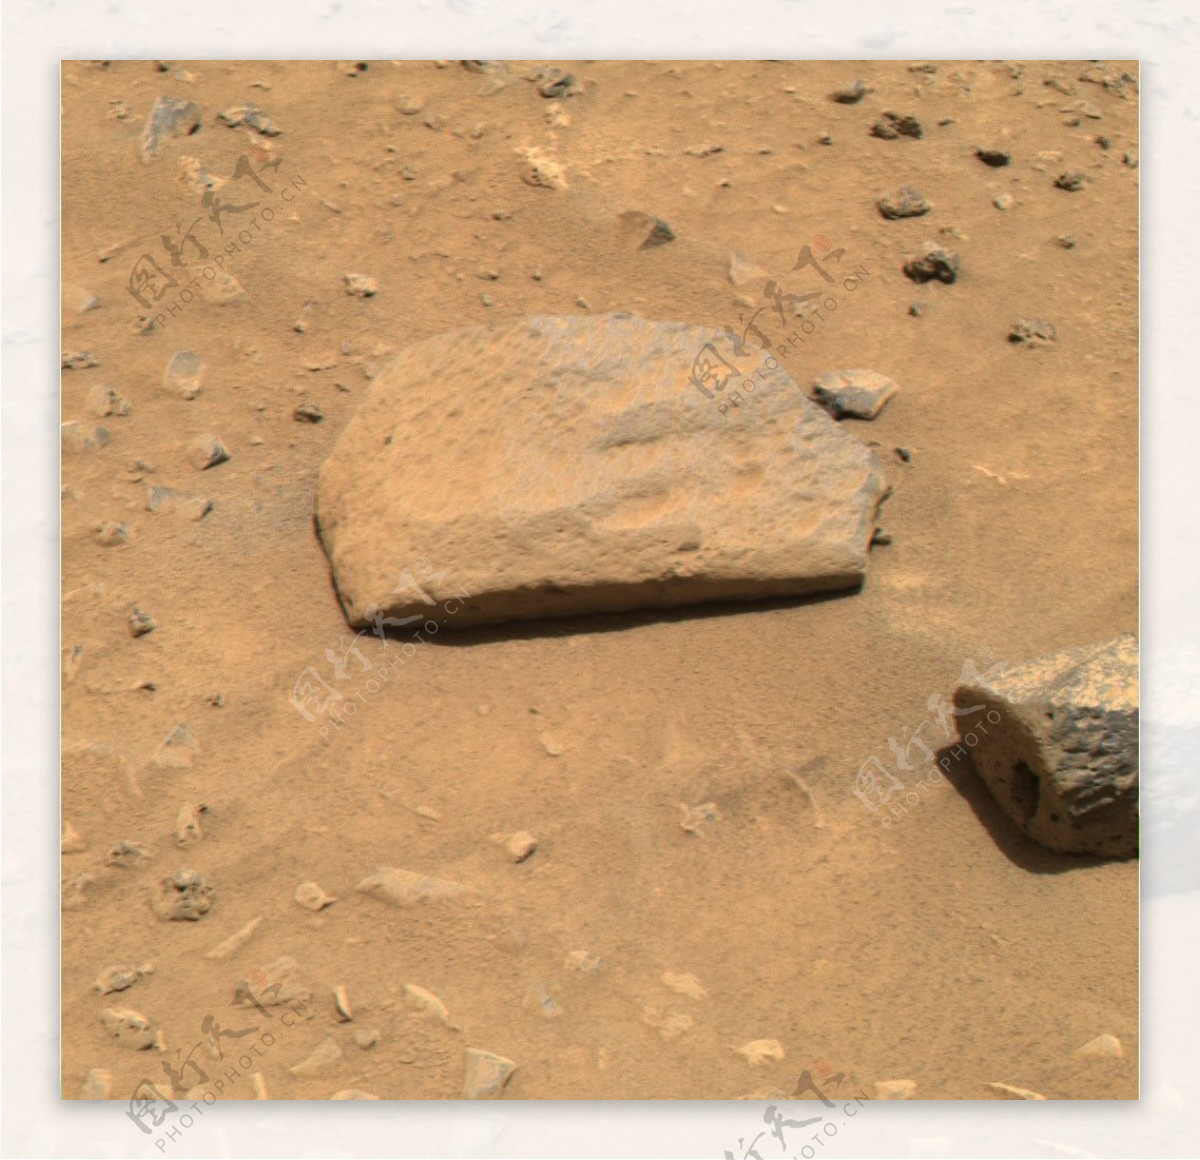 火星登录车发回地球的高清火星图片7